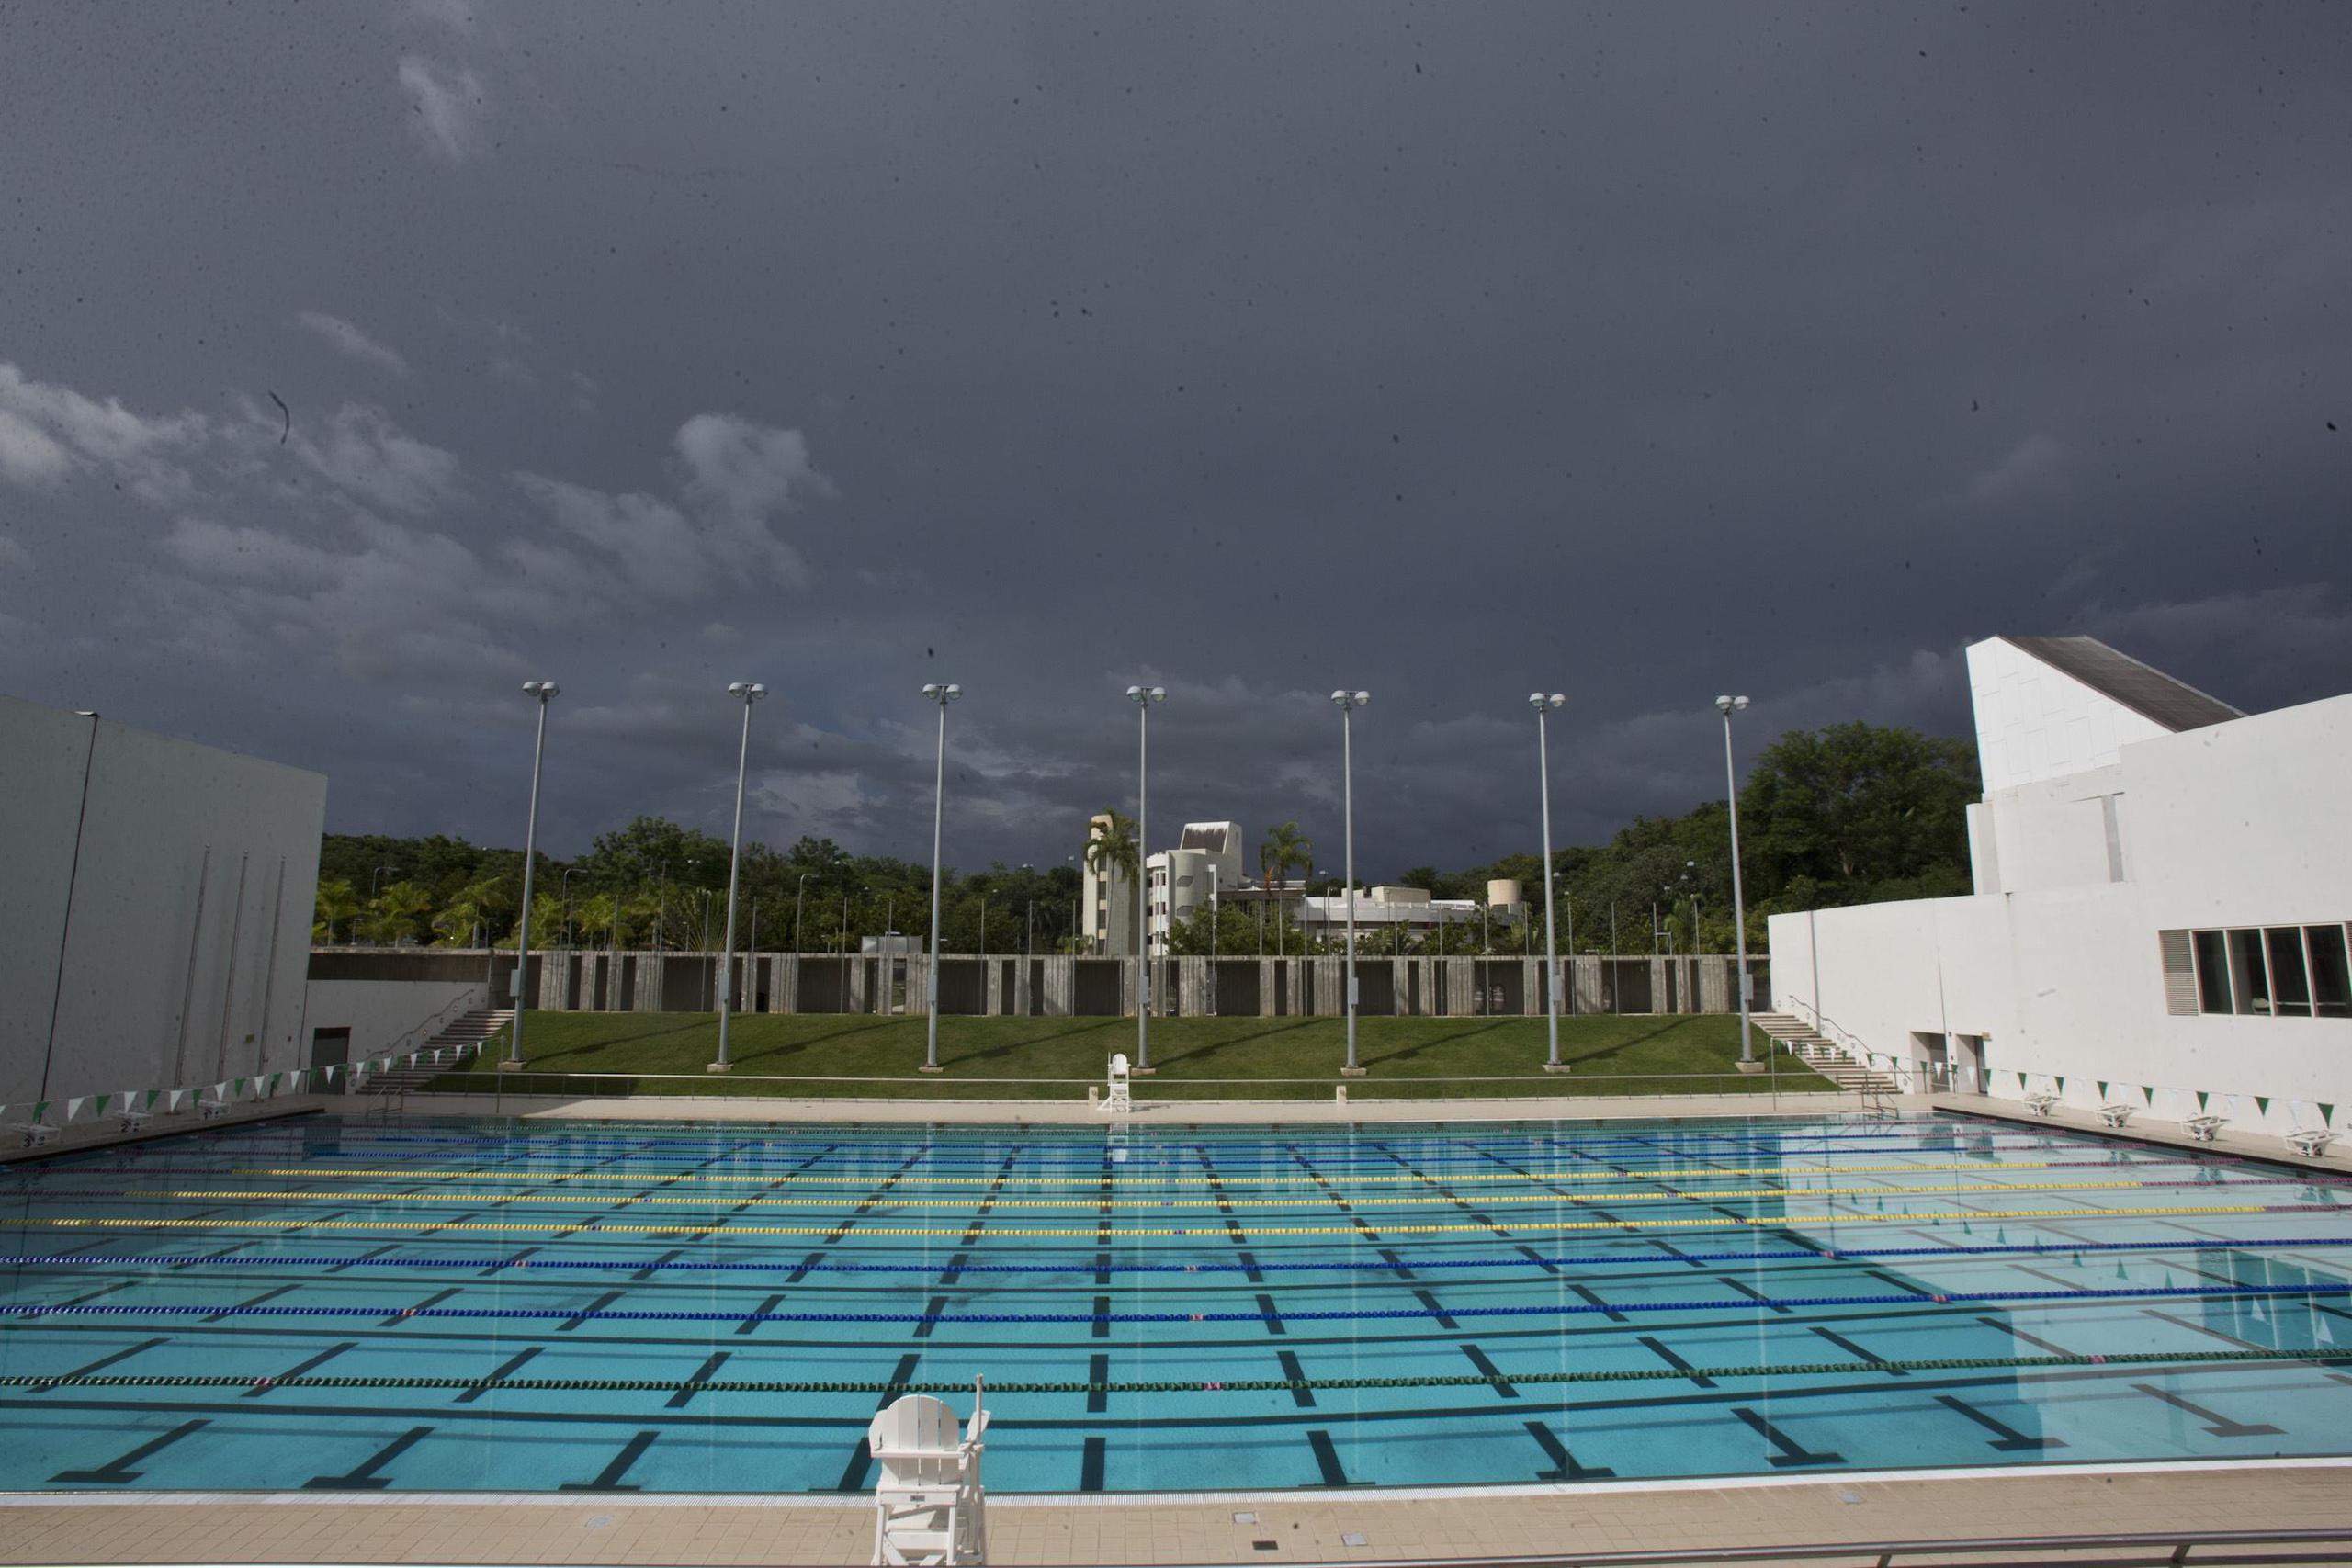 La auditoría encontró que presuntamente se pagó $73,832 de manera irregular a dos proveedores para que ofrecieran servicios relacionados con el mantenimiento de las piscinas del natatorio universitario.